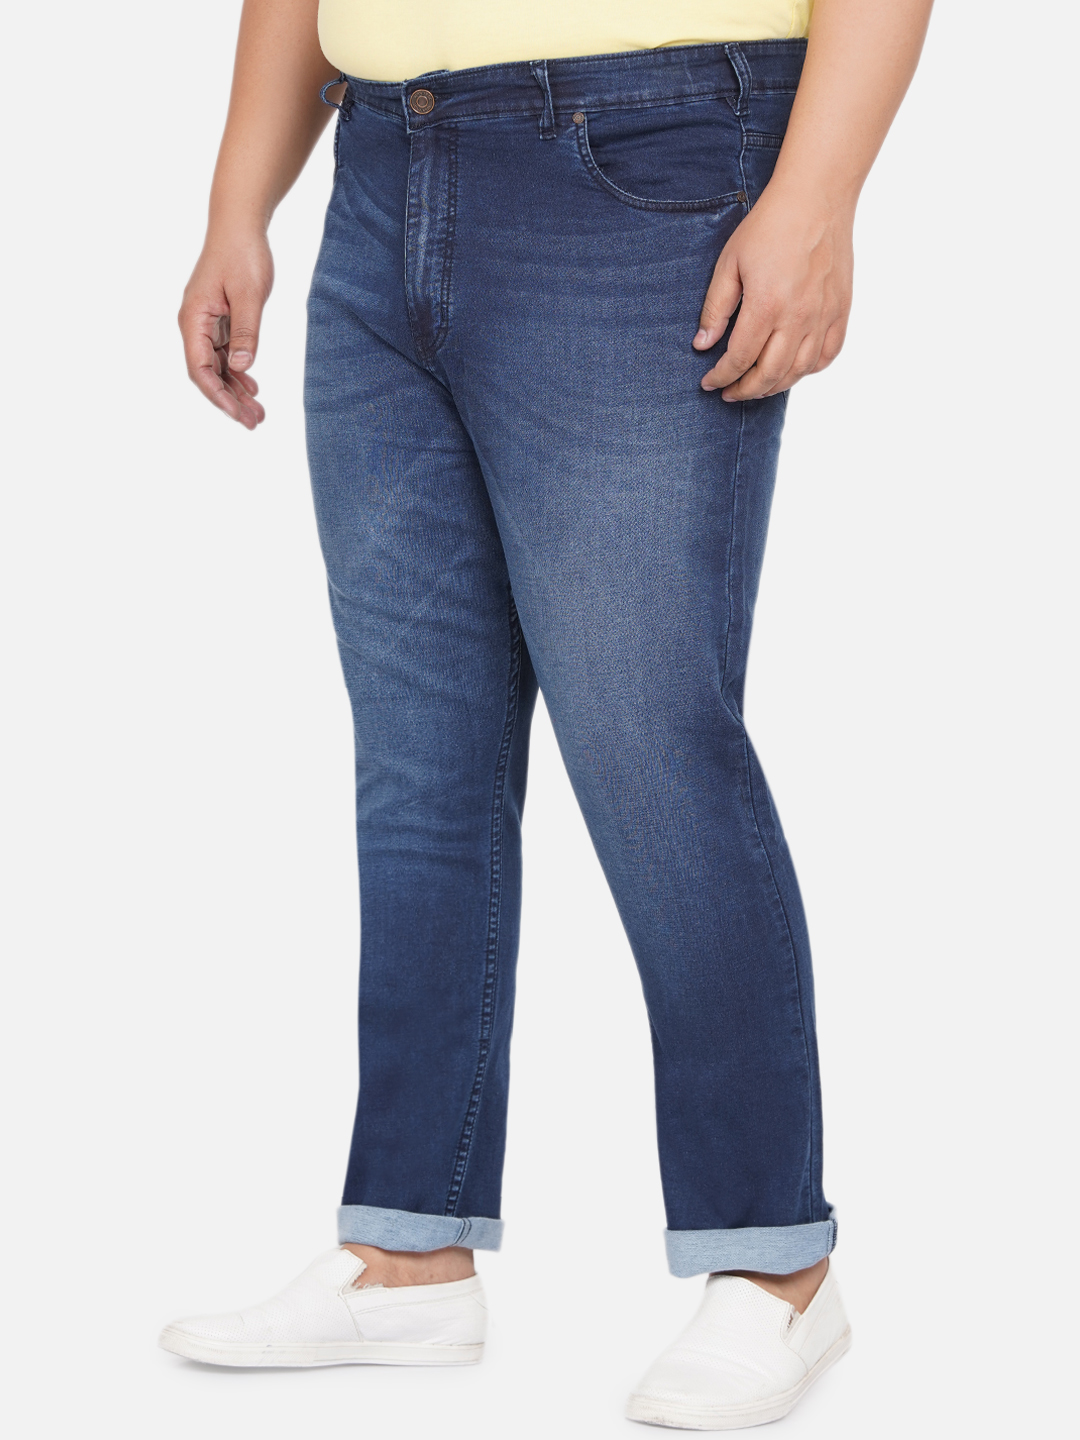 bottomwear/jeans/BEPLJP28165/bepljp28165-4.jpg